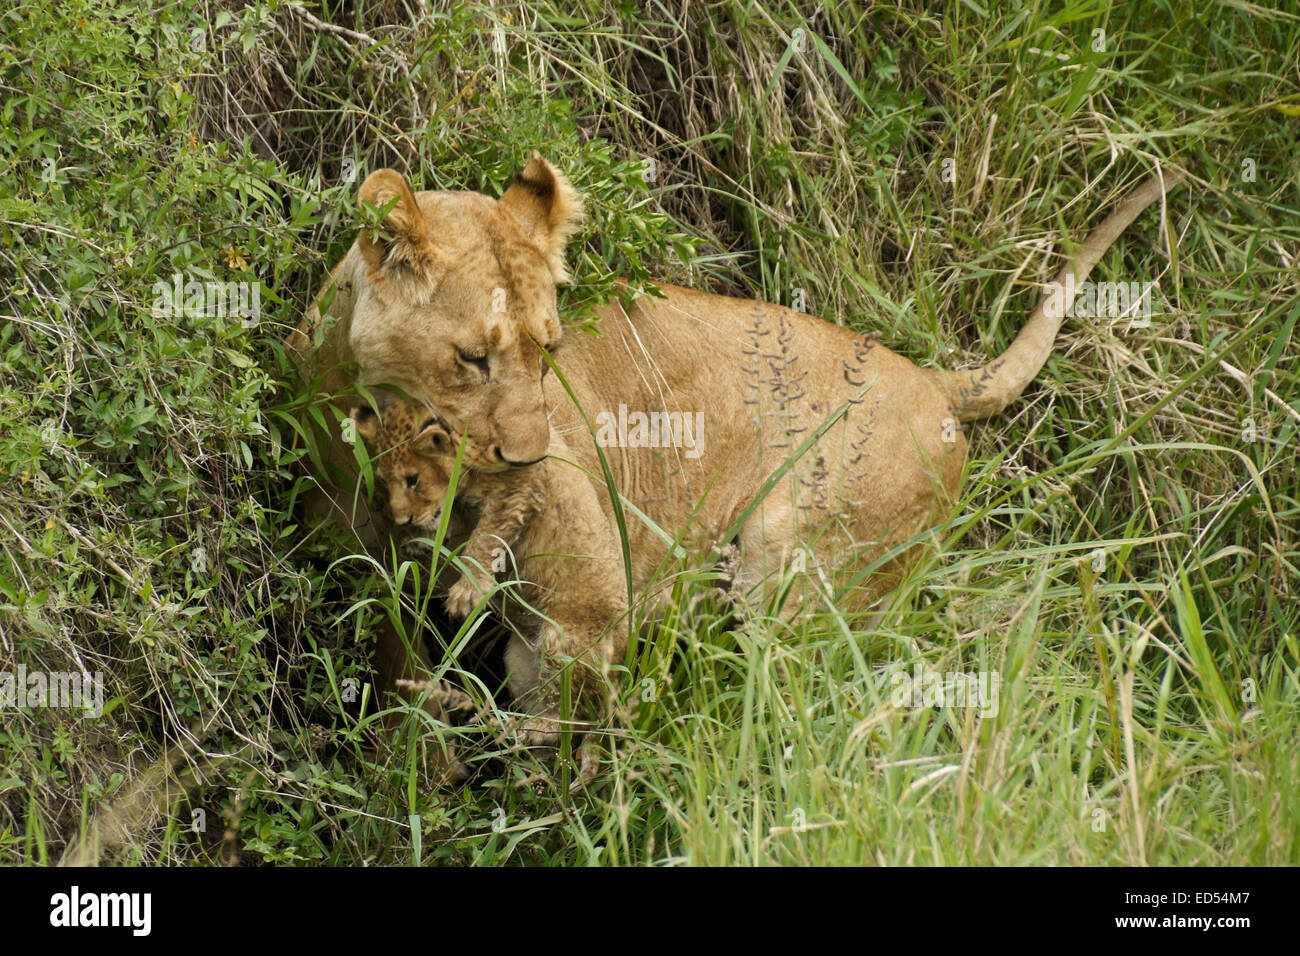 Lioness carrying cub in mouth, Masai Mara, Kenya Stock Photo